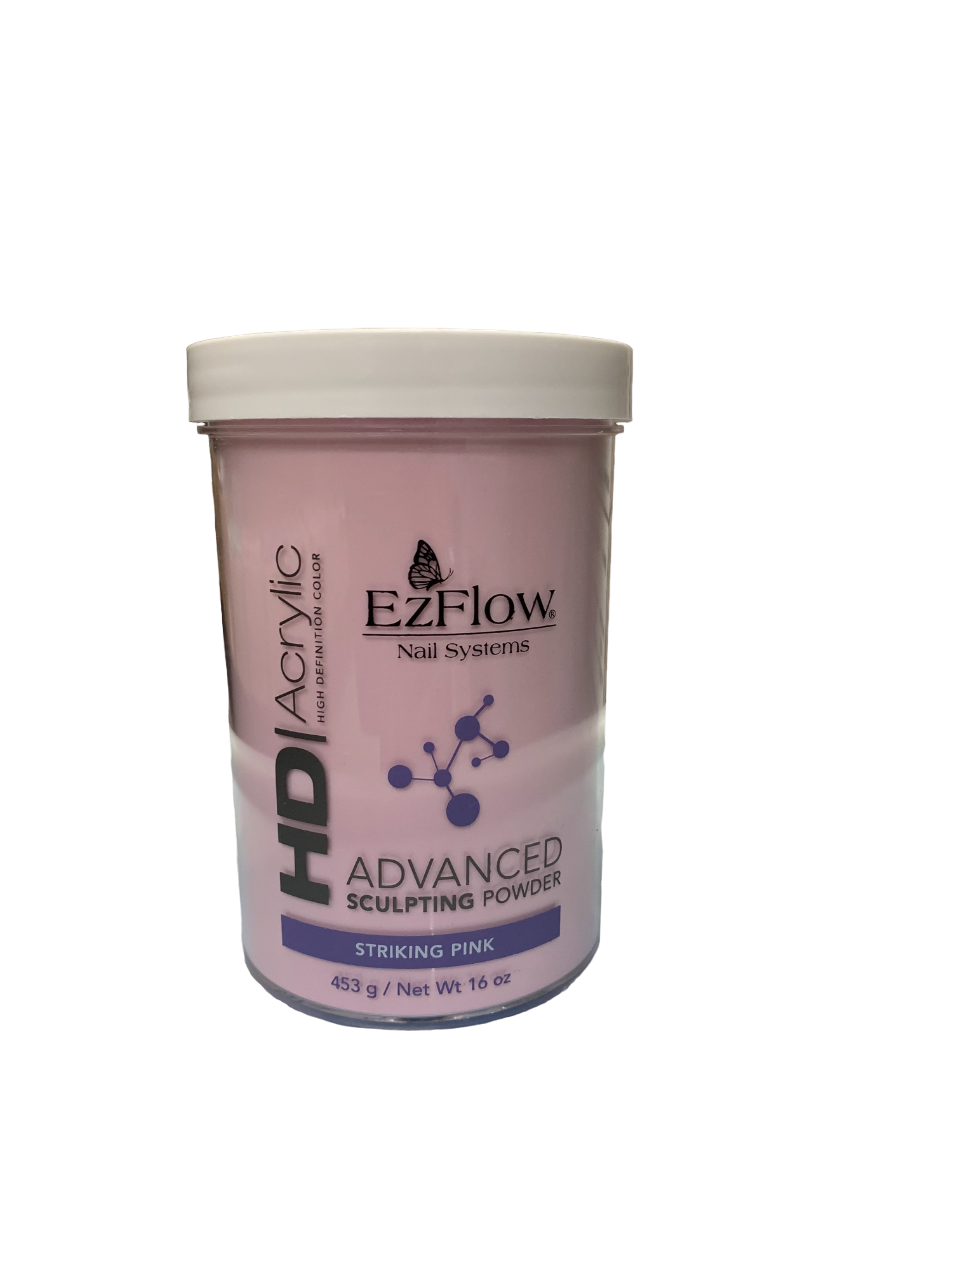 Ezflow HD Advanced Sculpting Powder - EZFSP - Striking Pink